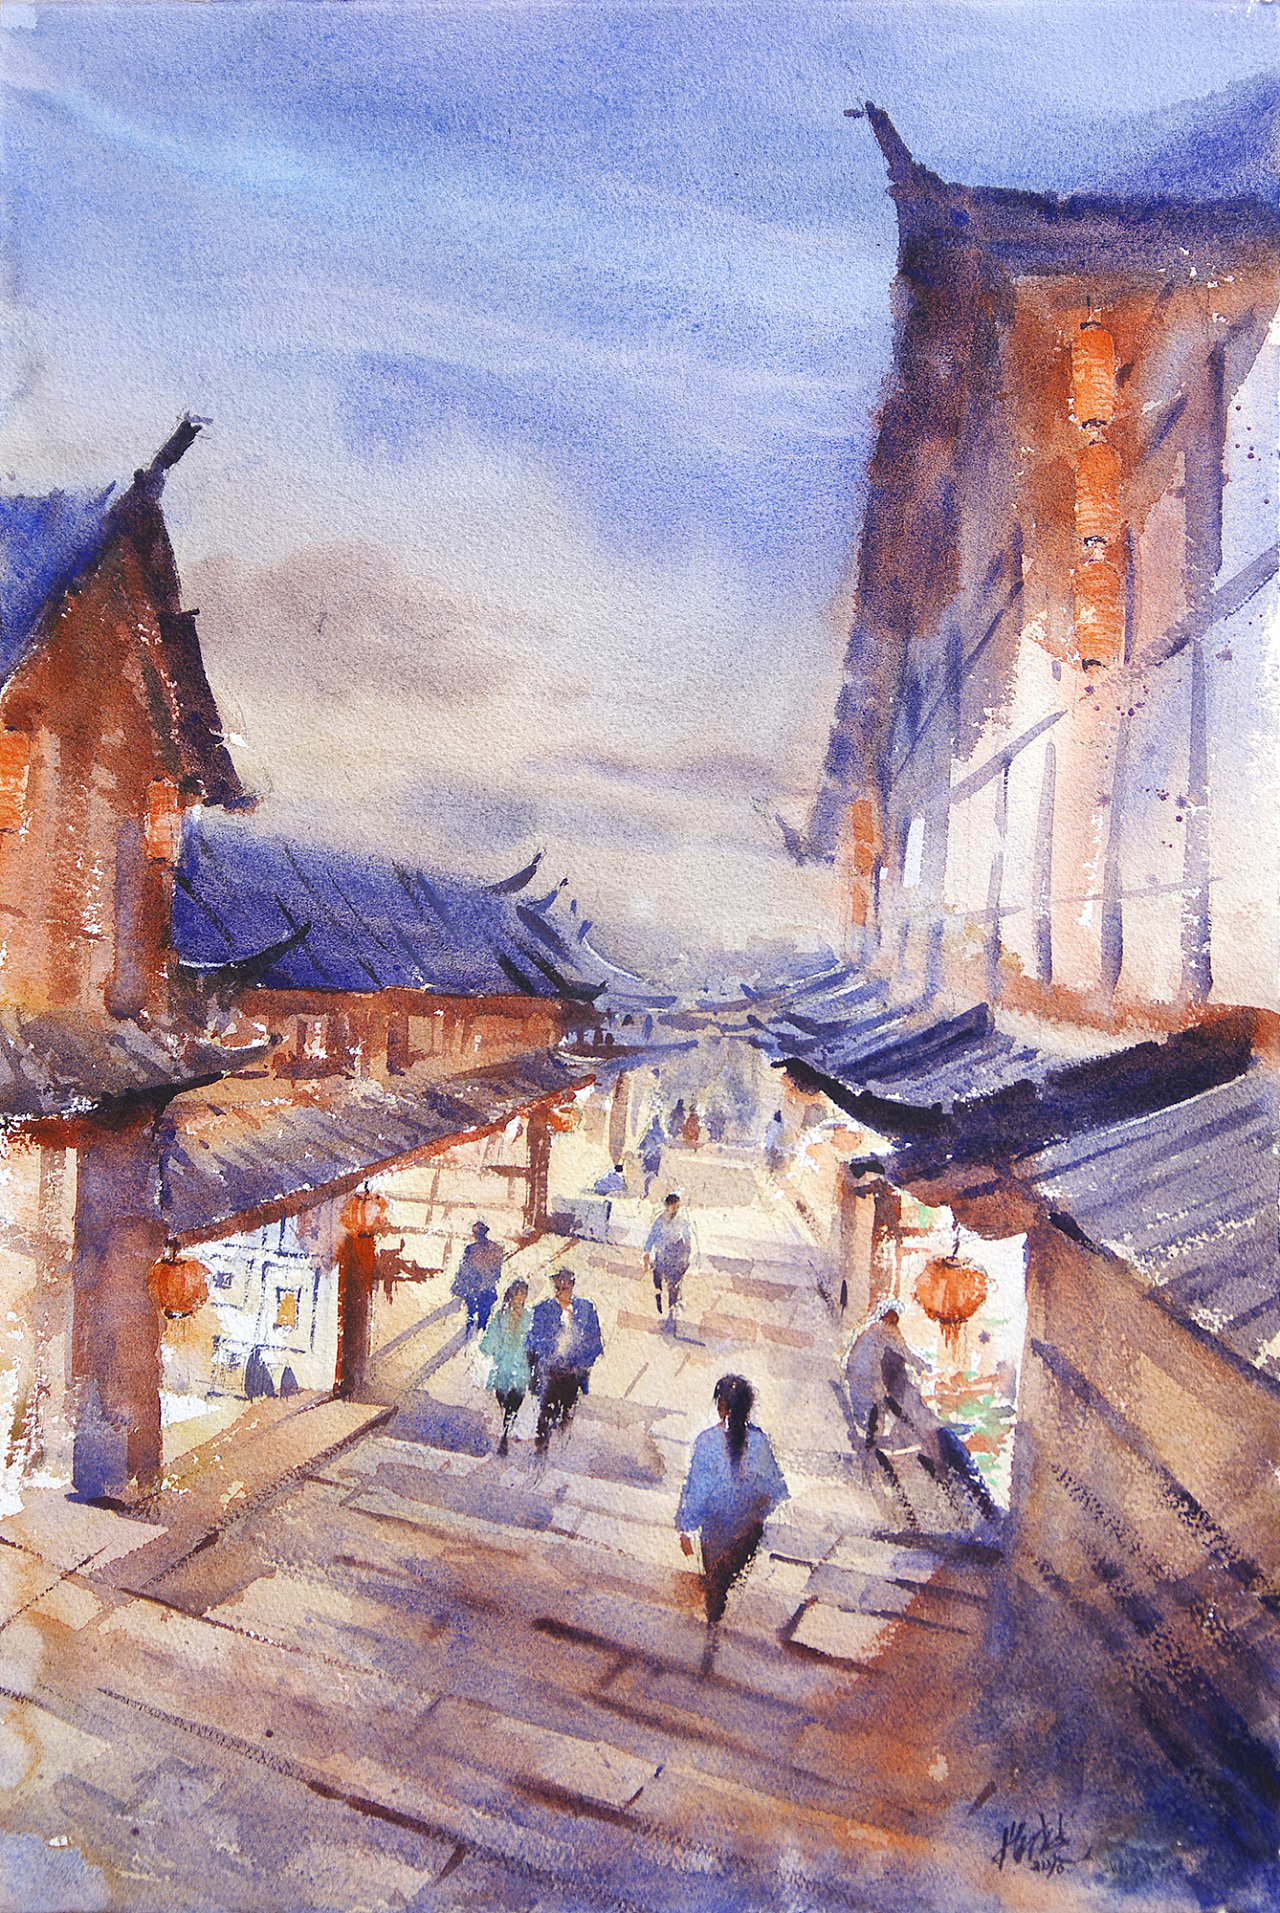 丽江古城绘画作品图片